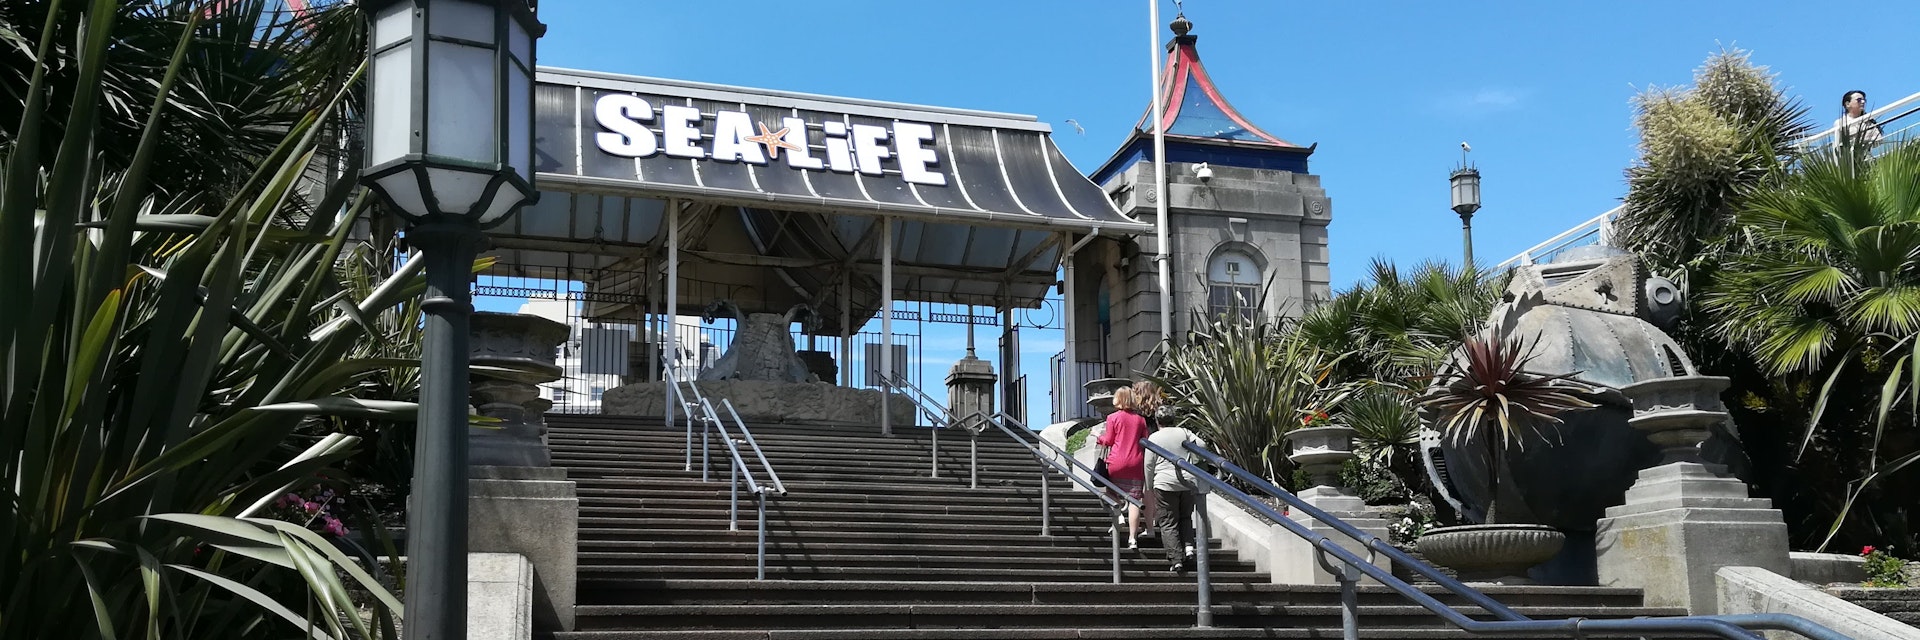 The pierside entrance to the SEALIFE Brighton aquarium